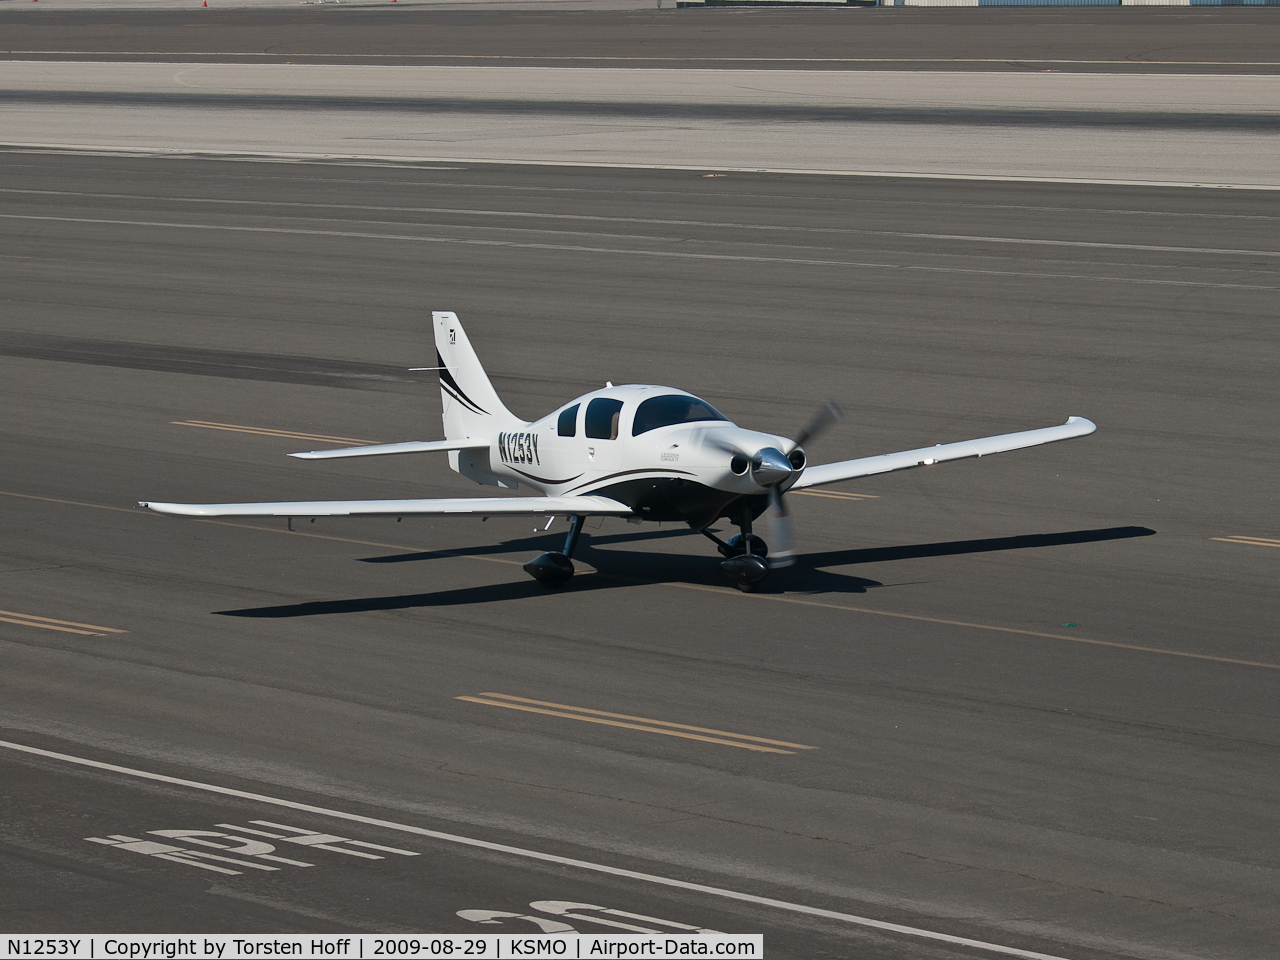 N1253Y, Cessna LC41-550FG C/N 411133, N1253Y taxiing